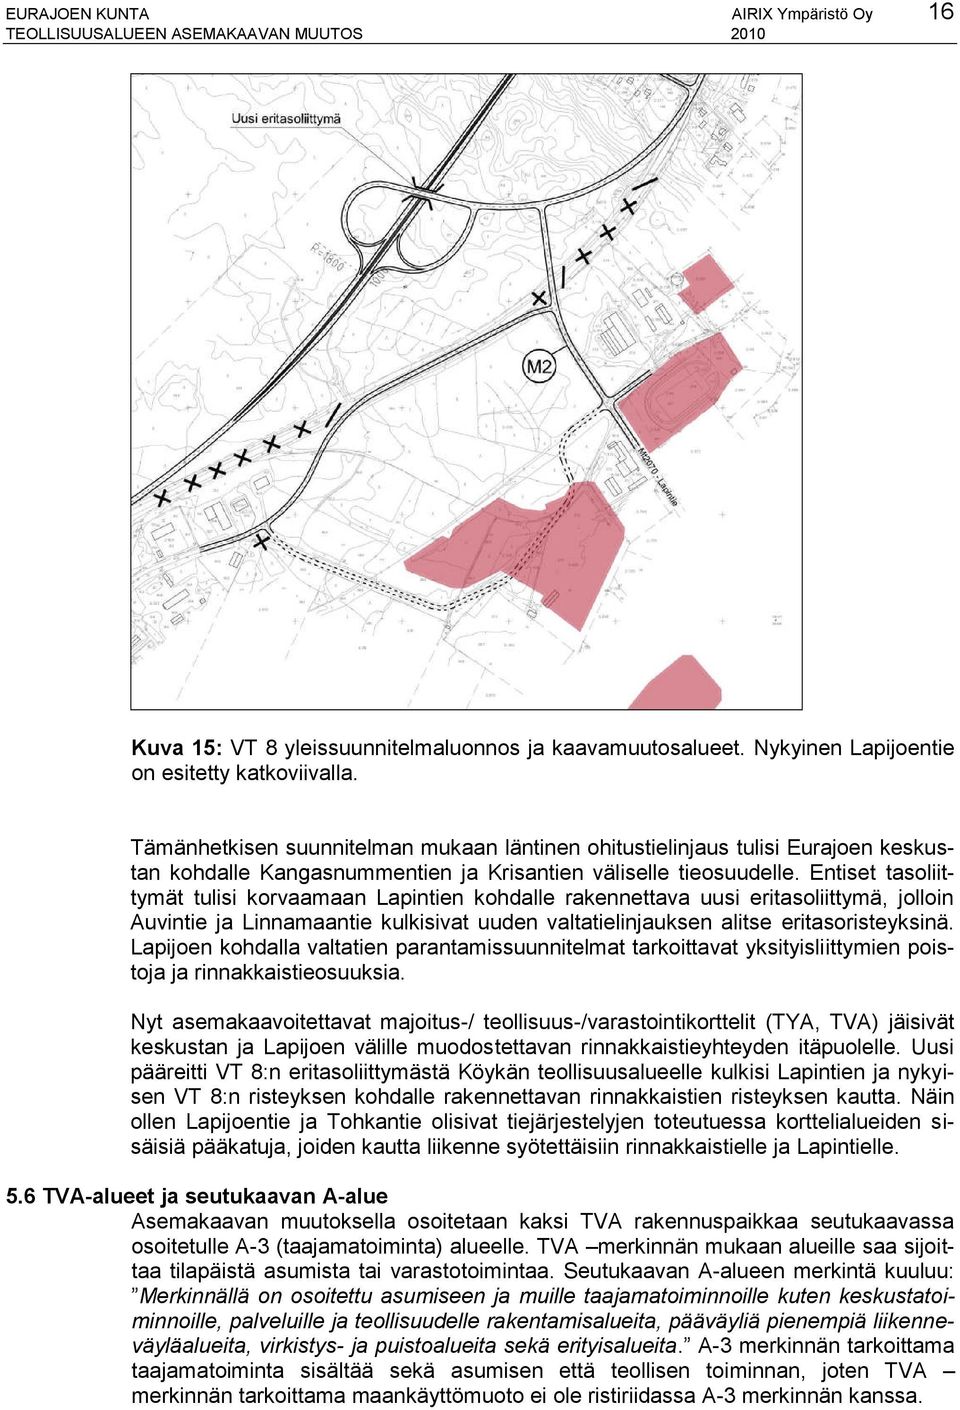 Entiset tasoliittymät tulisi korvaamaan Lapintien kohdalle rakennettava uusi eritasoliittymä, jolloin Auvintie ja Linnamaantie kulkisivat uuden valtatielinjauksen alitse eritasoristeyksinä.